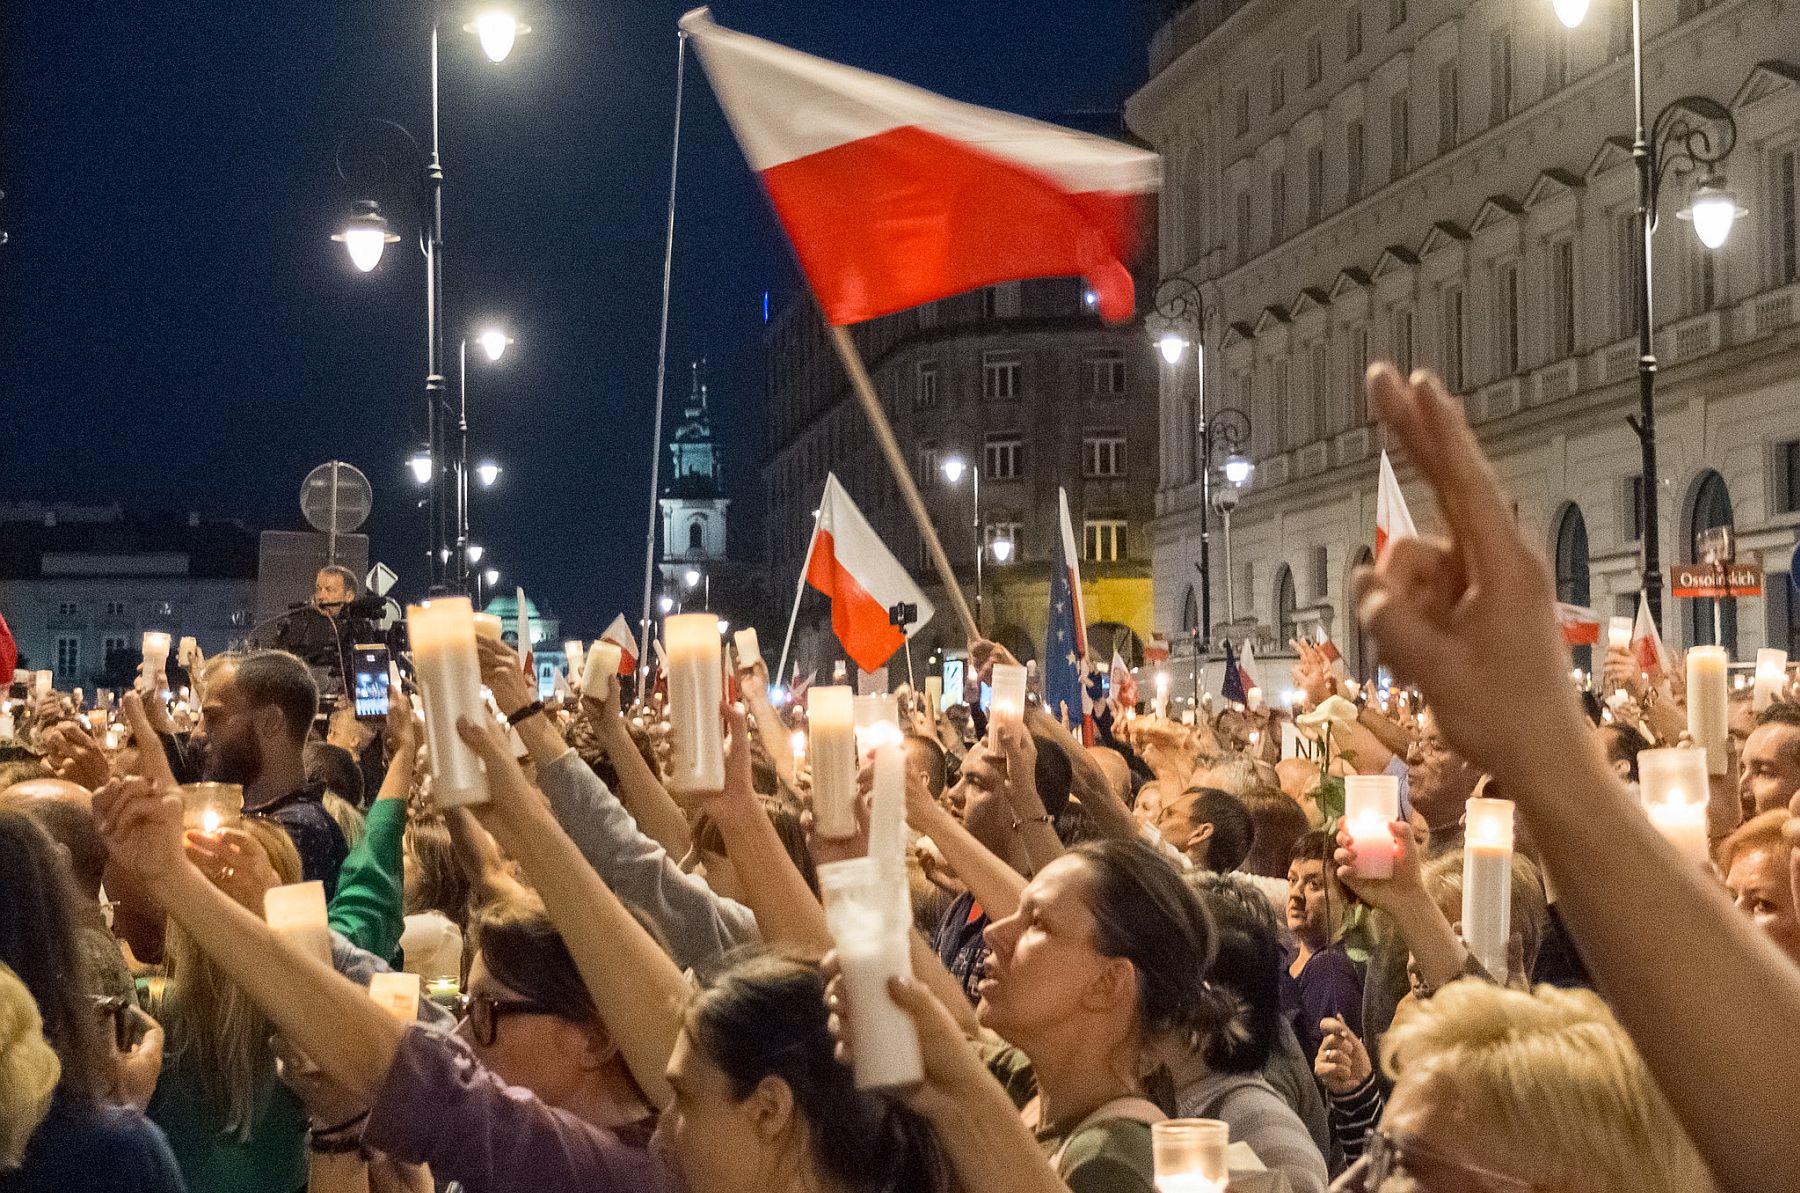 הונגריה הובילה, פולין למדה ממנה. מחאה בפולין נגד הפגיעה בבתי המשפט ב-2017 (צילום: גז'גוז' זןקובסקי CC BY-NC 2.0)